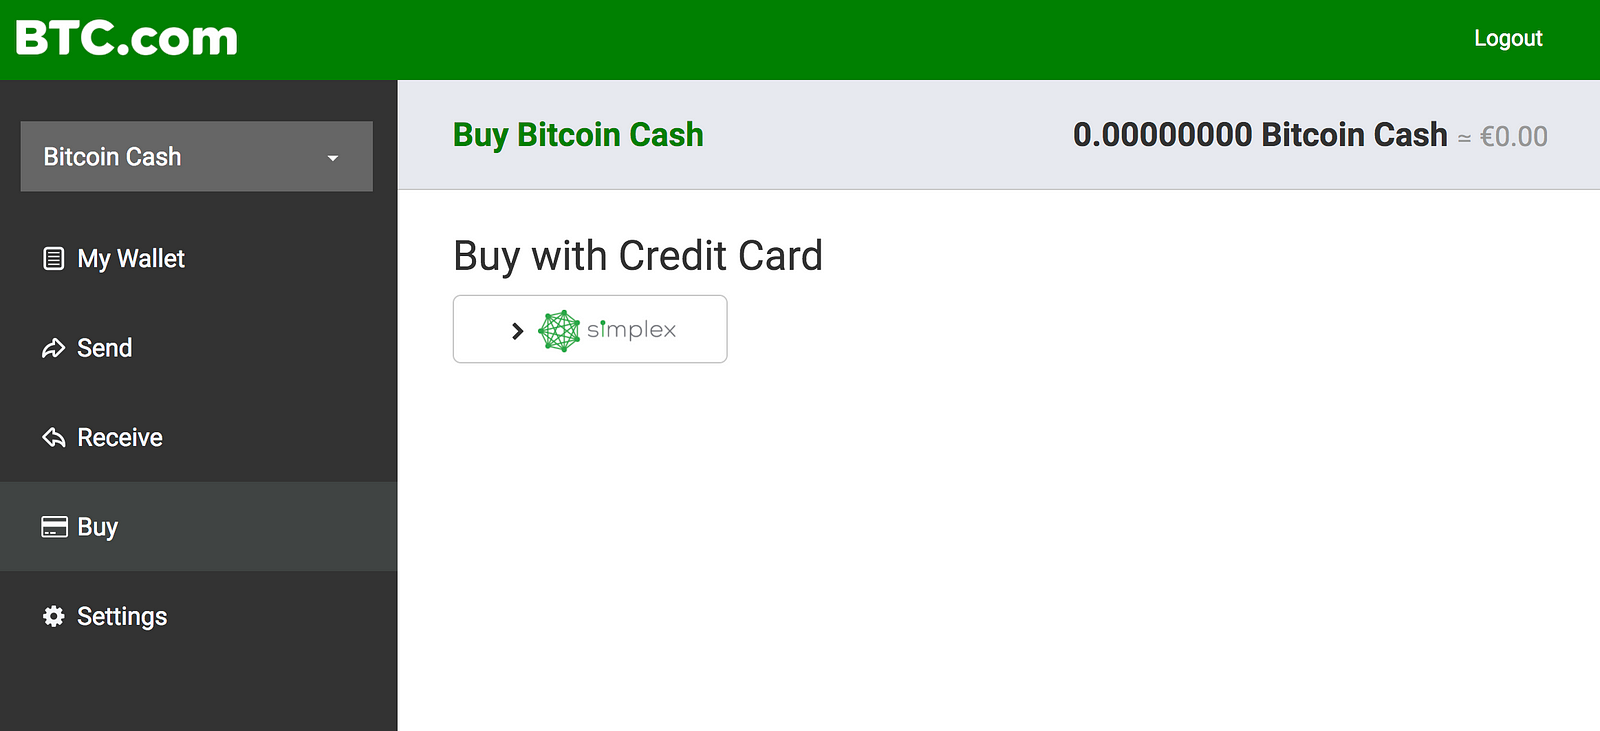 i sent bitcoin cash to a bitcoin wallet